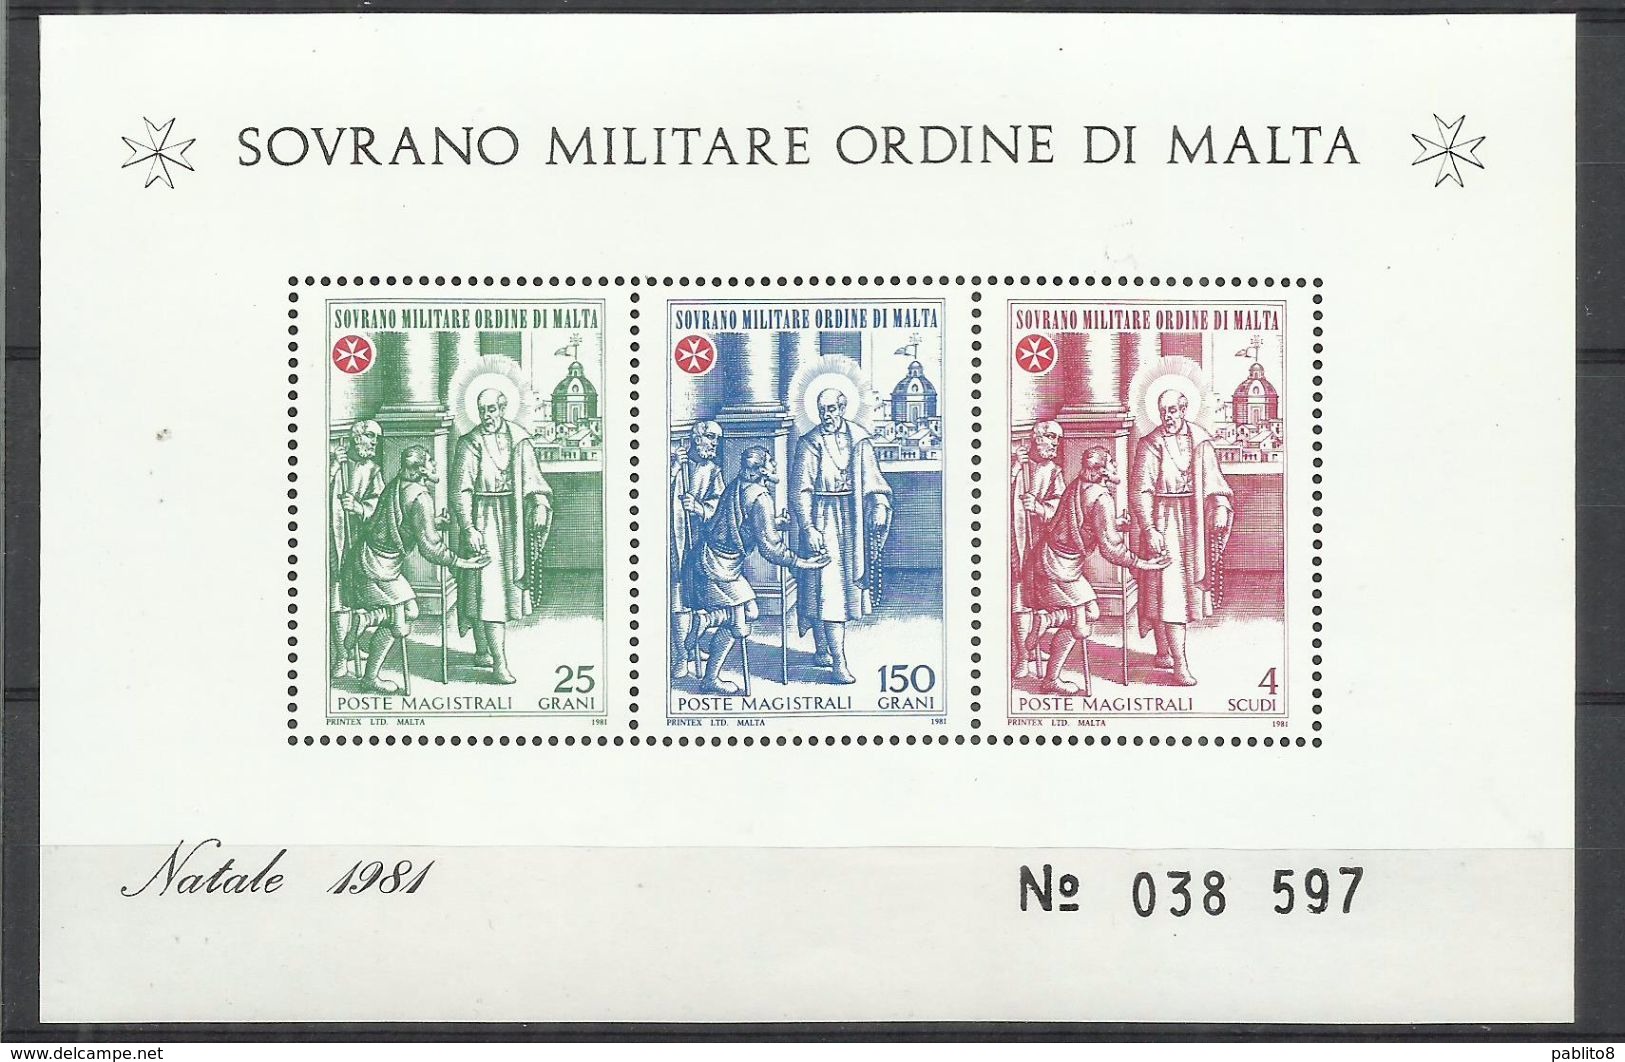 SMOM SOVRANO ORDINE MILITARE DI MALTA 1981 NATALE CHRISTMAS NOEL WEIHNACHTEN BLOCK SHEET BLOCCO FOGLIETTO MNH - Malte (Ordre De)